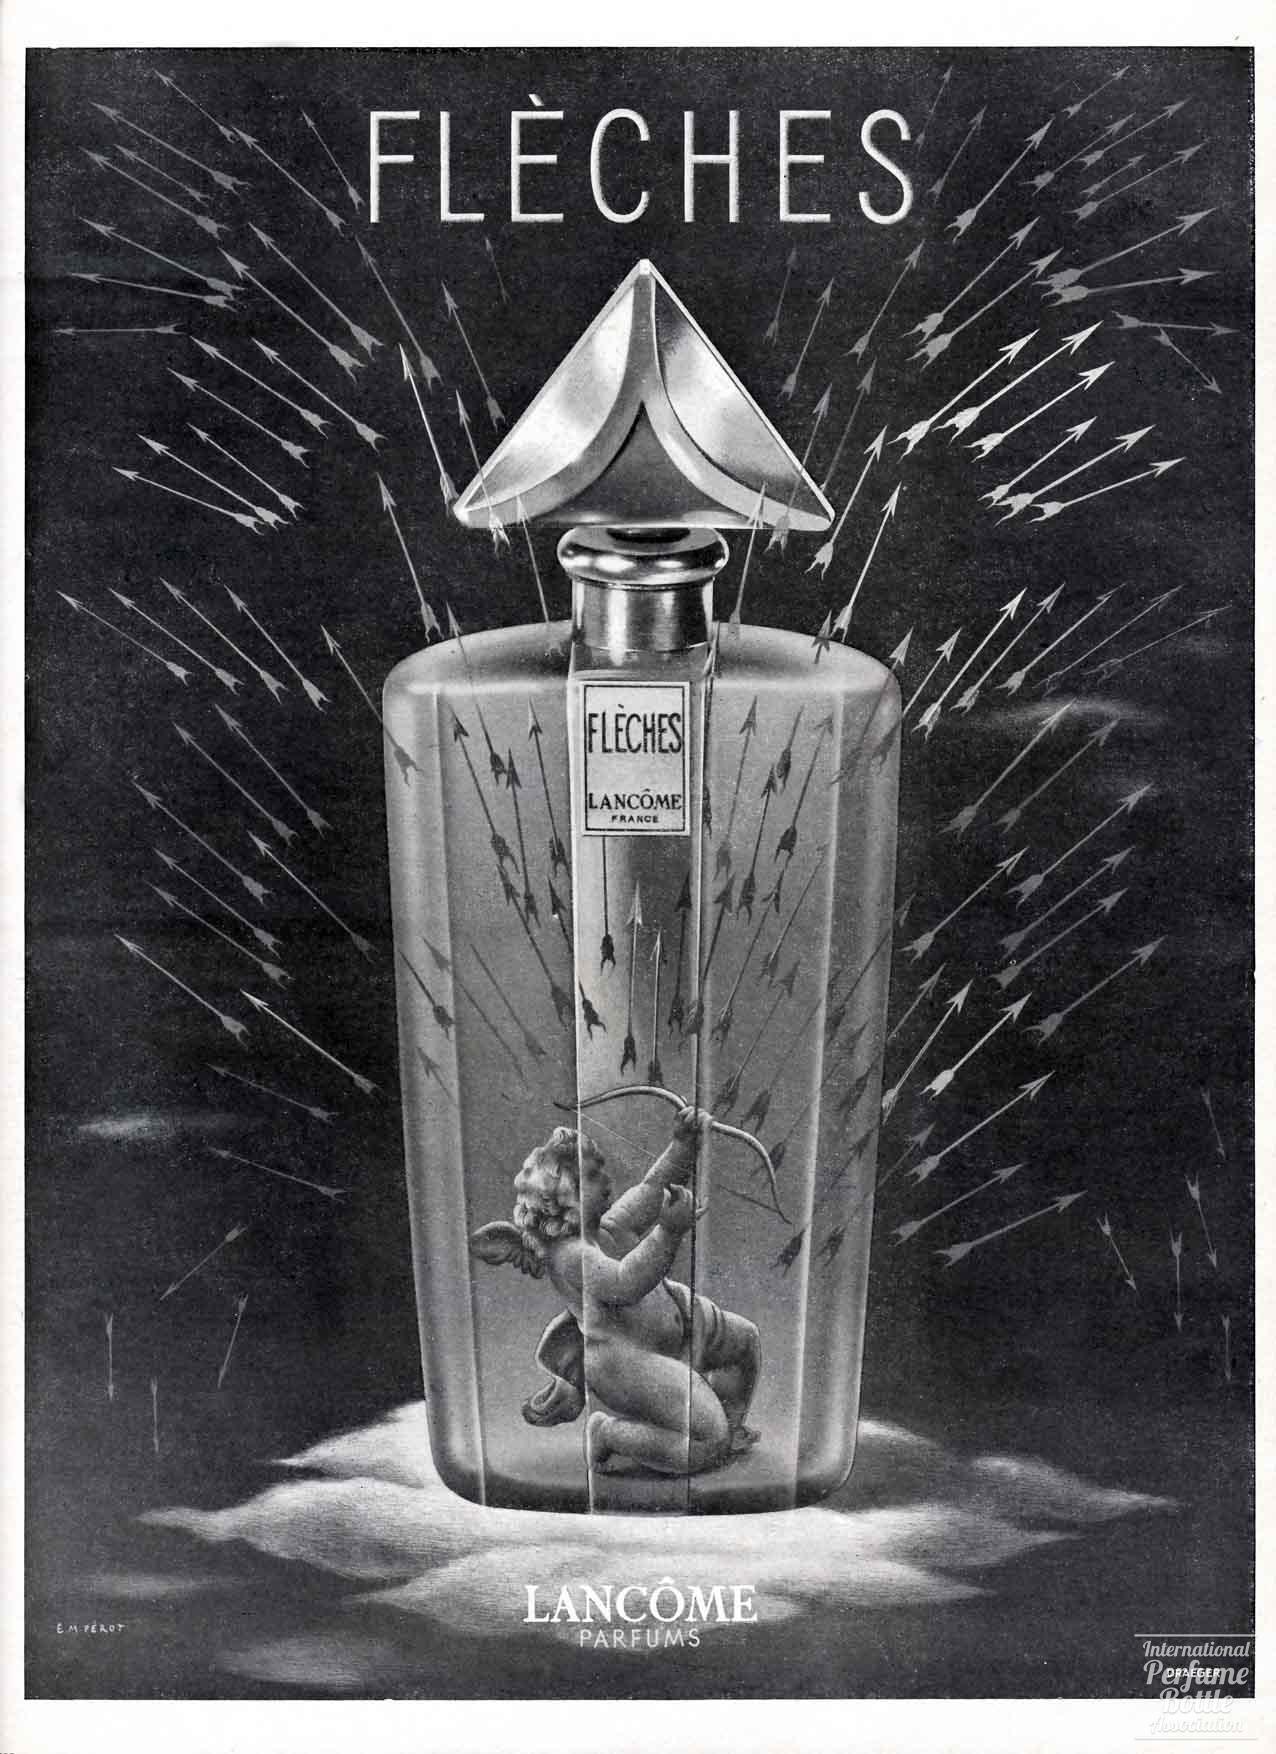 “Fléches” by Lancôme Advertisement - 1948